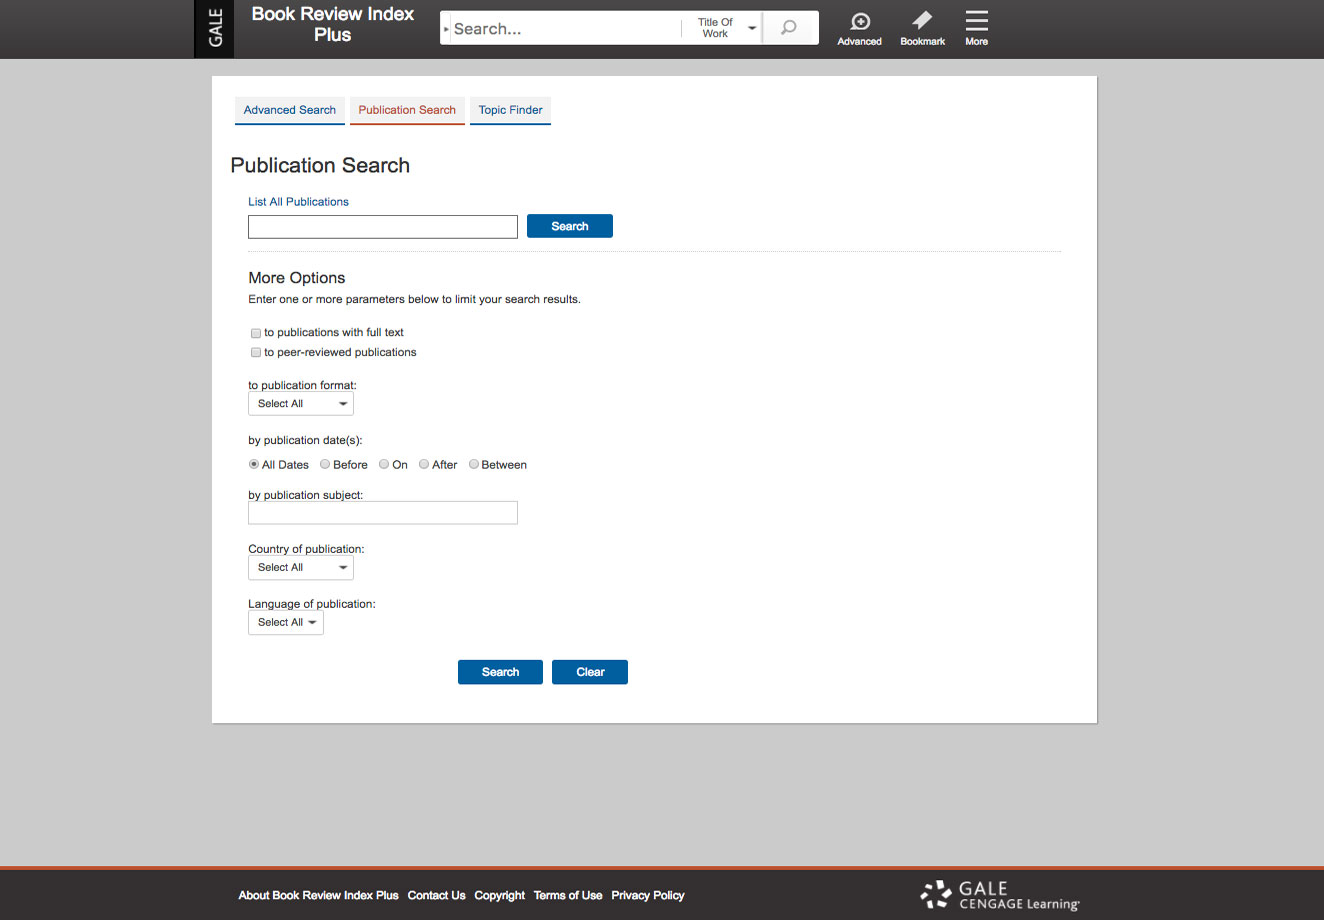 出版物检索帮助用户通过出版物形式、日期、主题、国家和语言进行筛选。